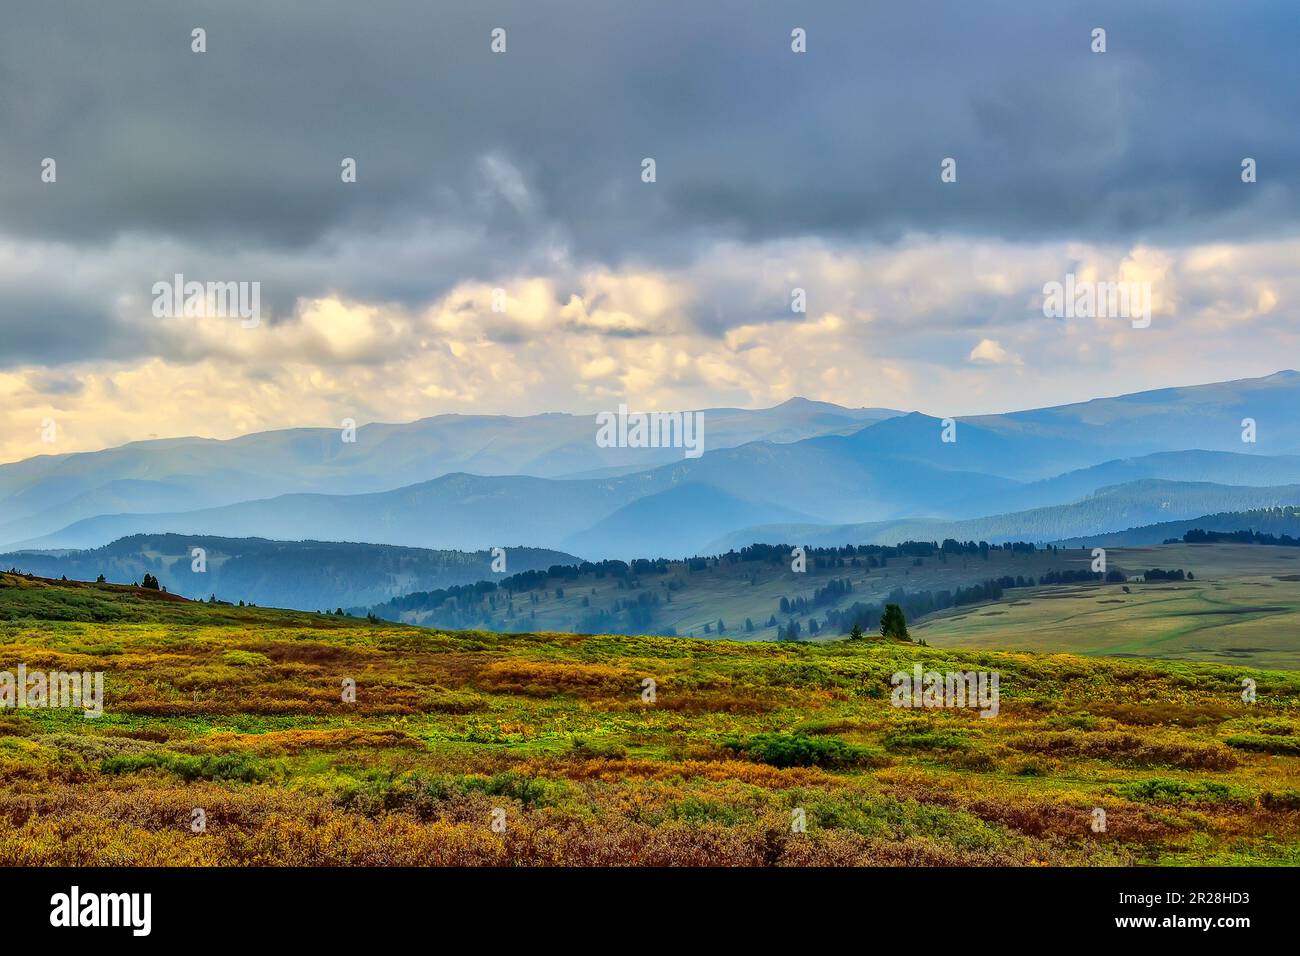 Wunderschöne Sommerberglandschaft bei bewölktem Wetter. Bunte Zwergvegetation im Vordergrund und eine Kette von Altai-Bergen im blauen Morgennebel Stockfoto